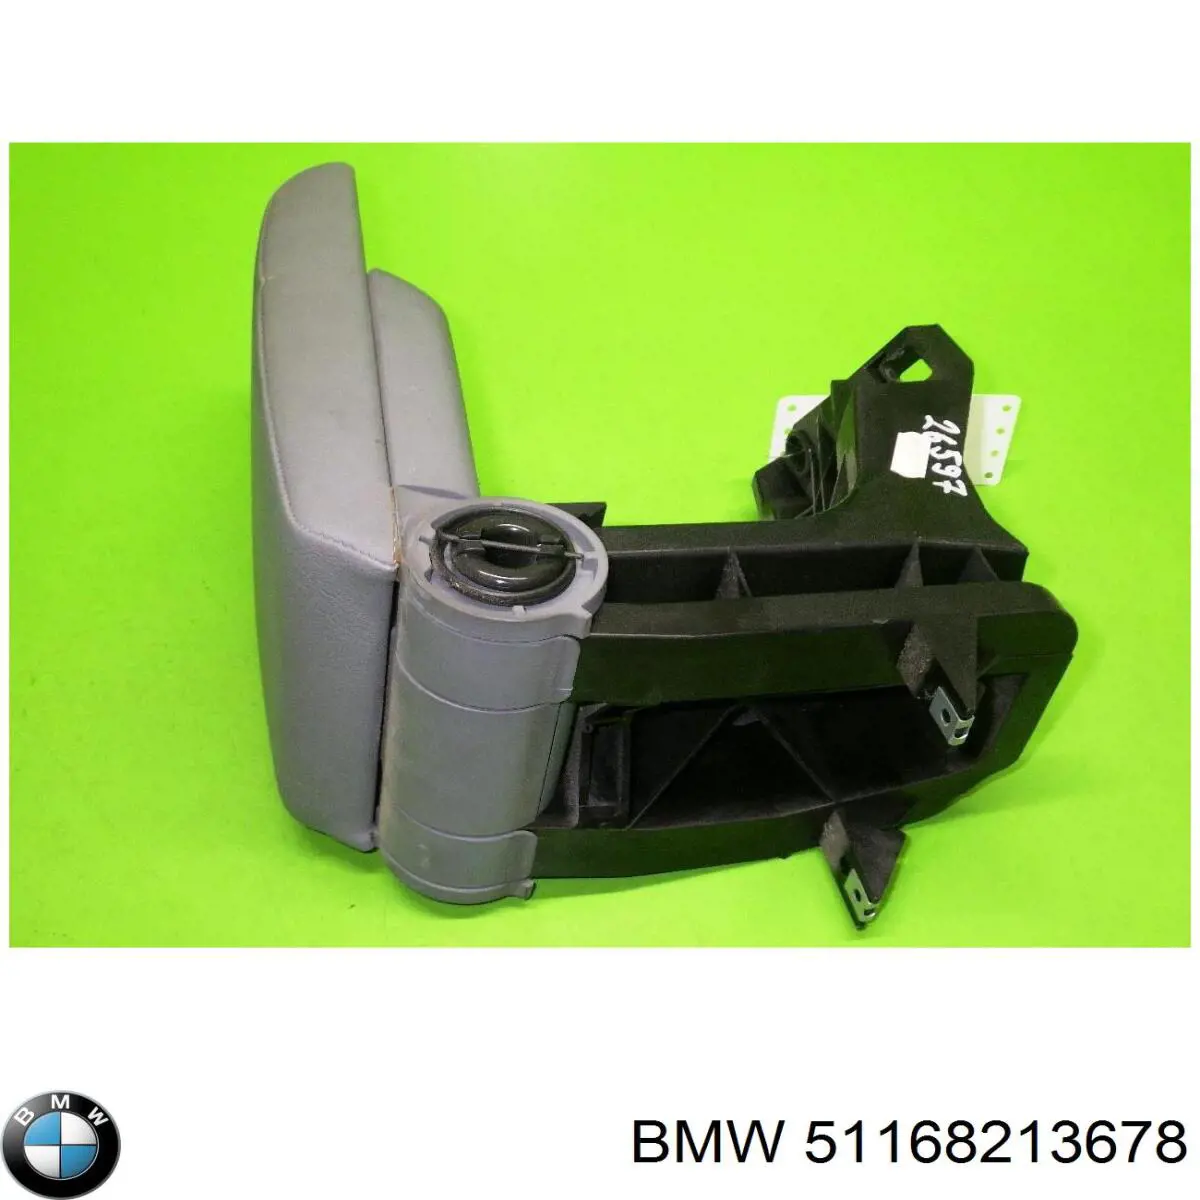 Apoyabrazos de consola central para BMW 3 (E46)